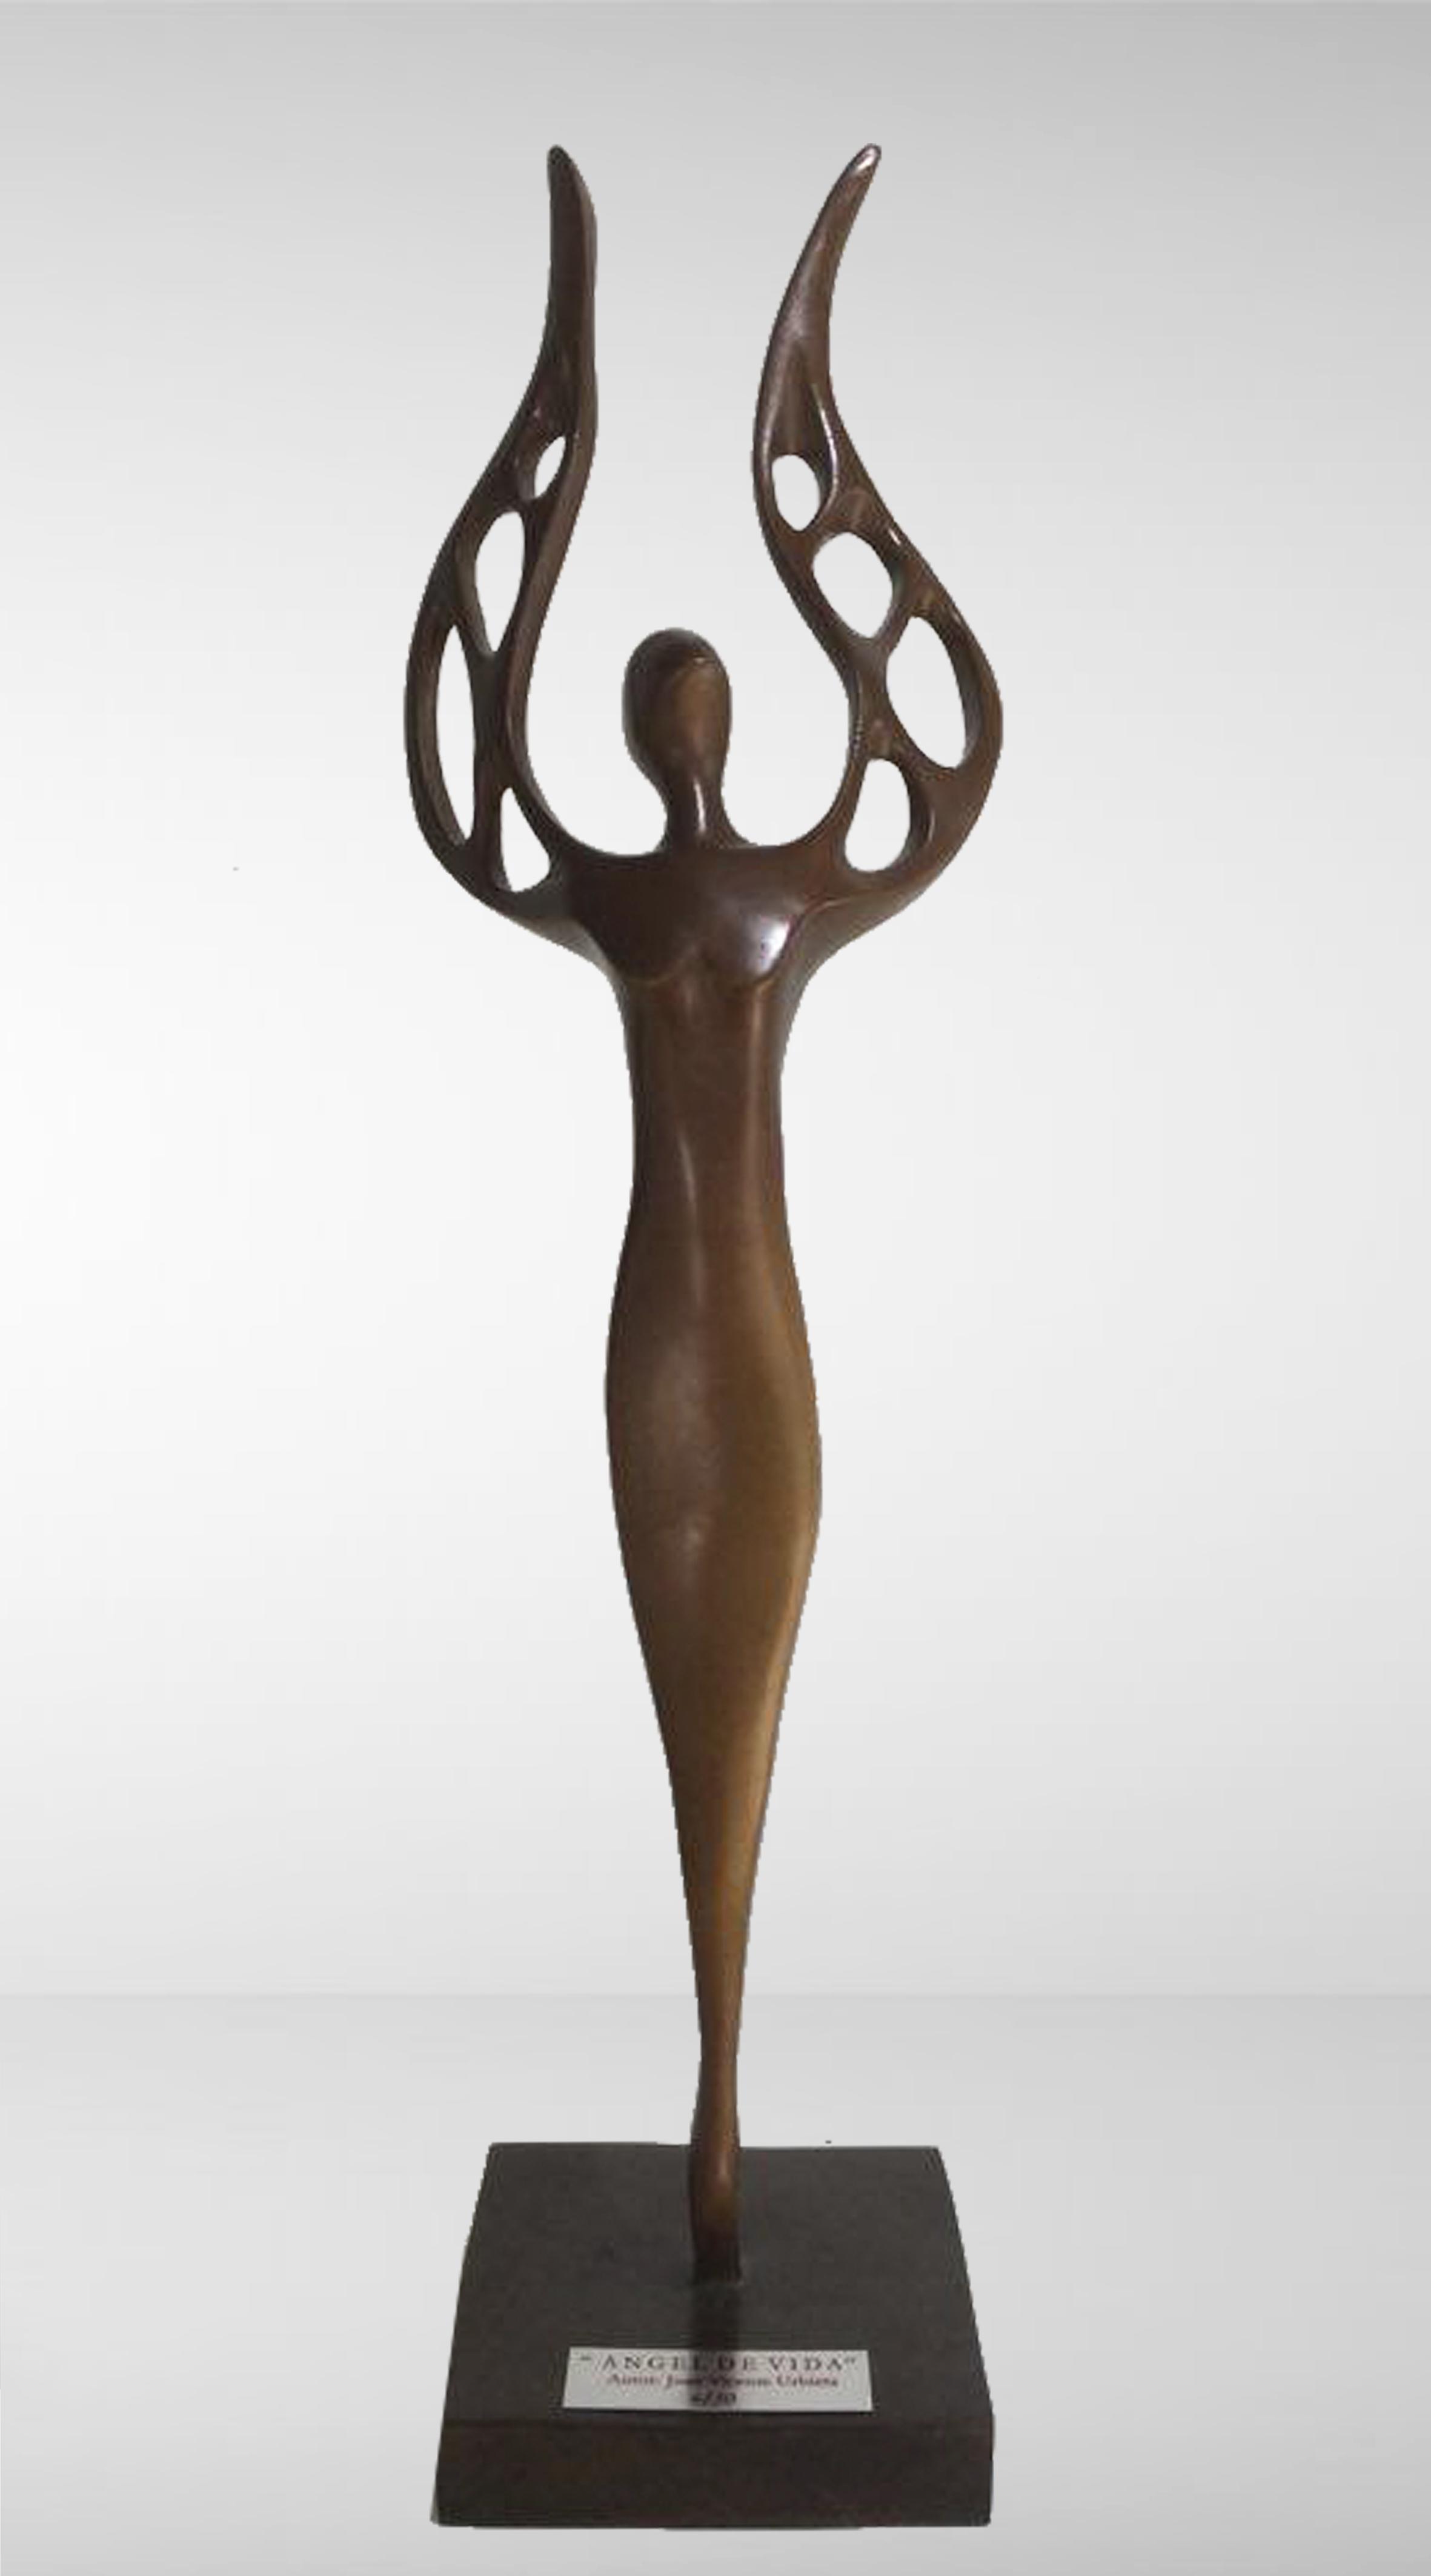 ANGEL DE VIDA (ANGEL OF LIFE), bronze, lost wax casting, 15 cm x 10 cm x 53 cm